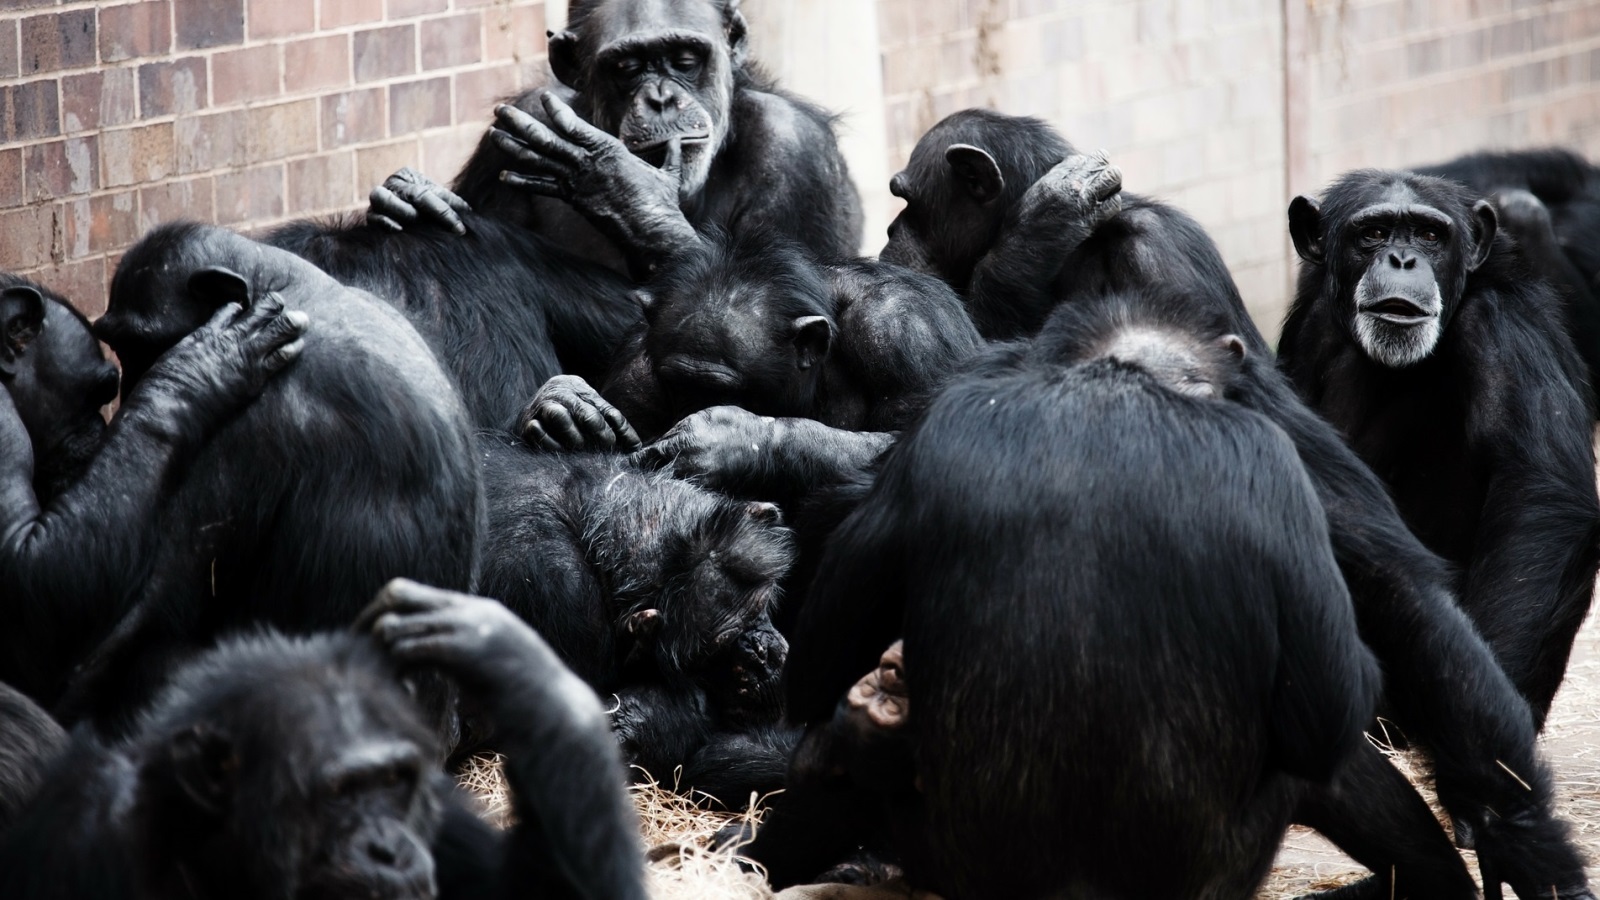 على الرغم من أن جينومها قريب من جينوم الإنسان فإن القرود لن تصبح أكثر من مجرد قرود وفق العالم الصيني سيو (مواقع التواصل)